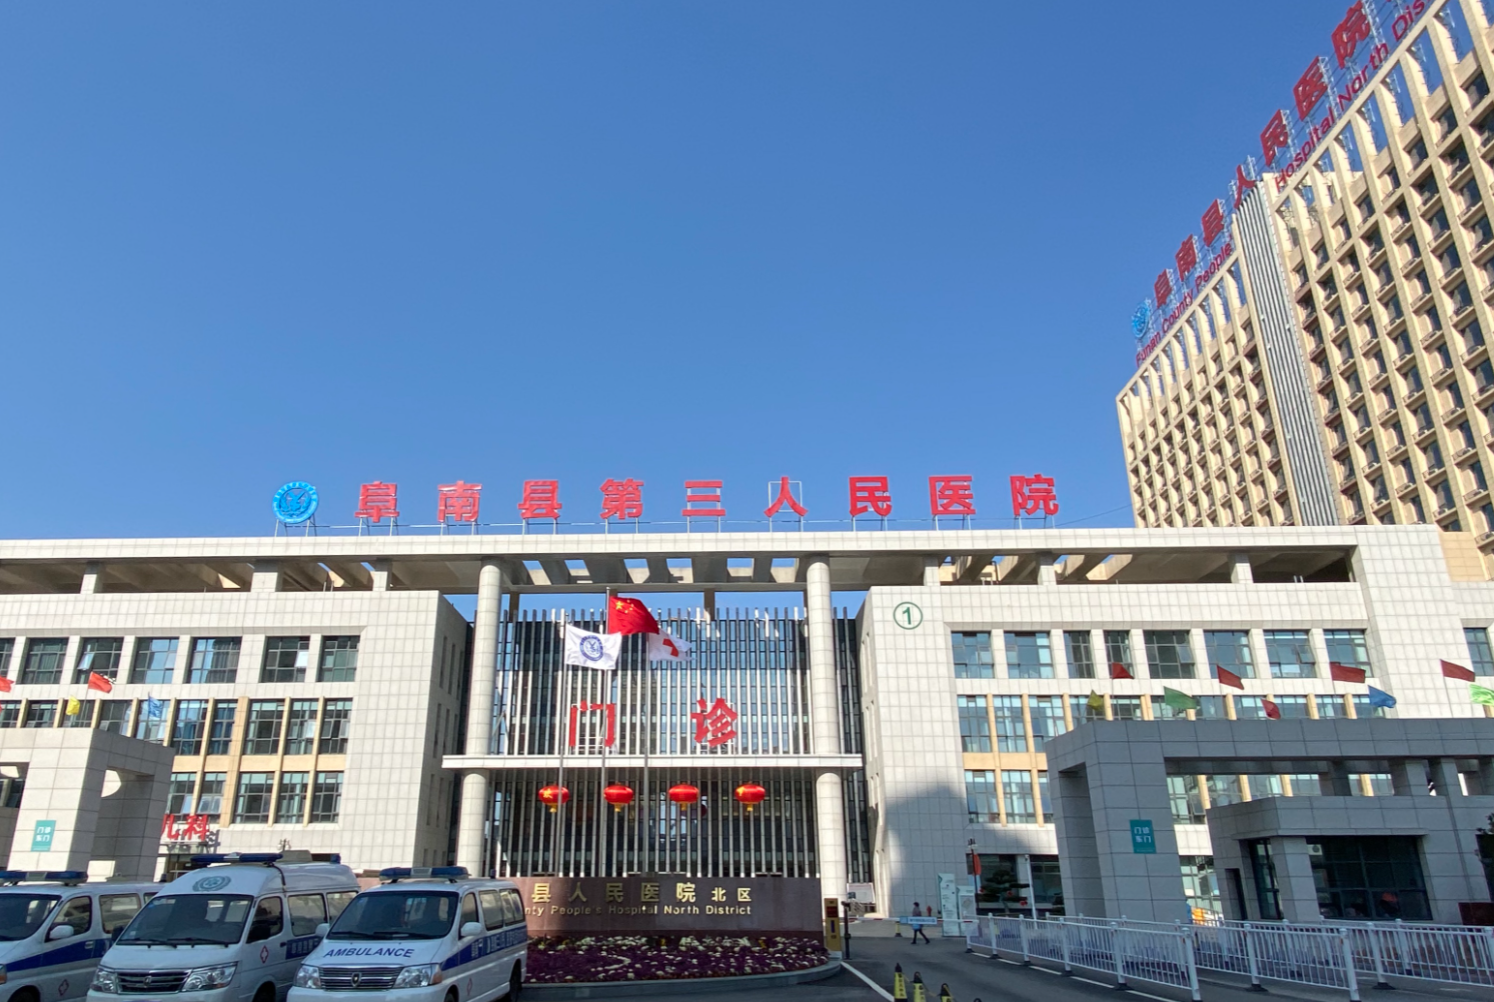 阜南县第三人民医院体检中心